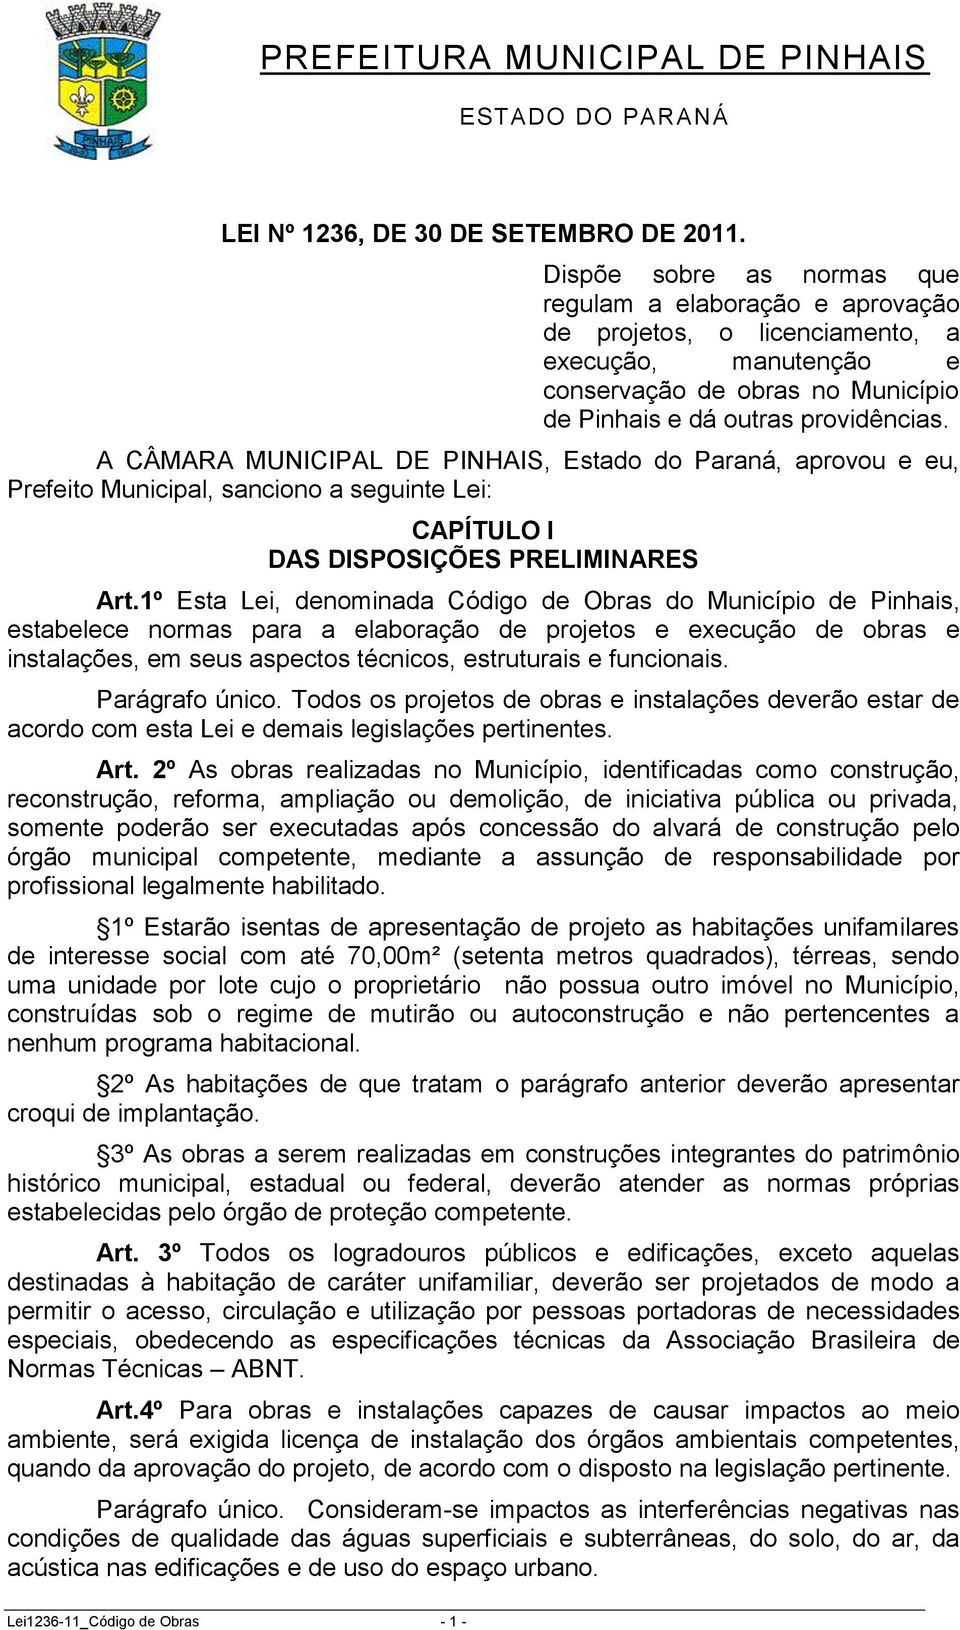 A CÂMARA MUNICIPAL DE PINHAIS, Estado do Paraná, aprovou e eu, Prefeito Municipal, sanciono a seguinte Lei: CAPÍTULO I DAS DISPOSIÇÕES PRELIMINARES Art.